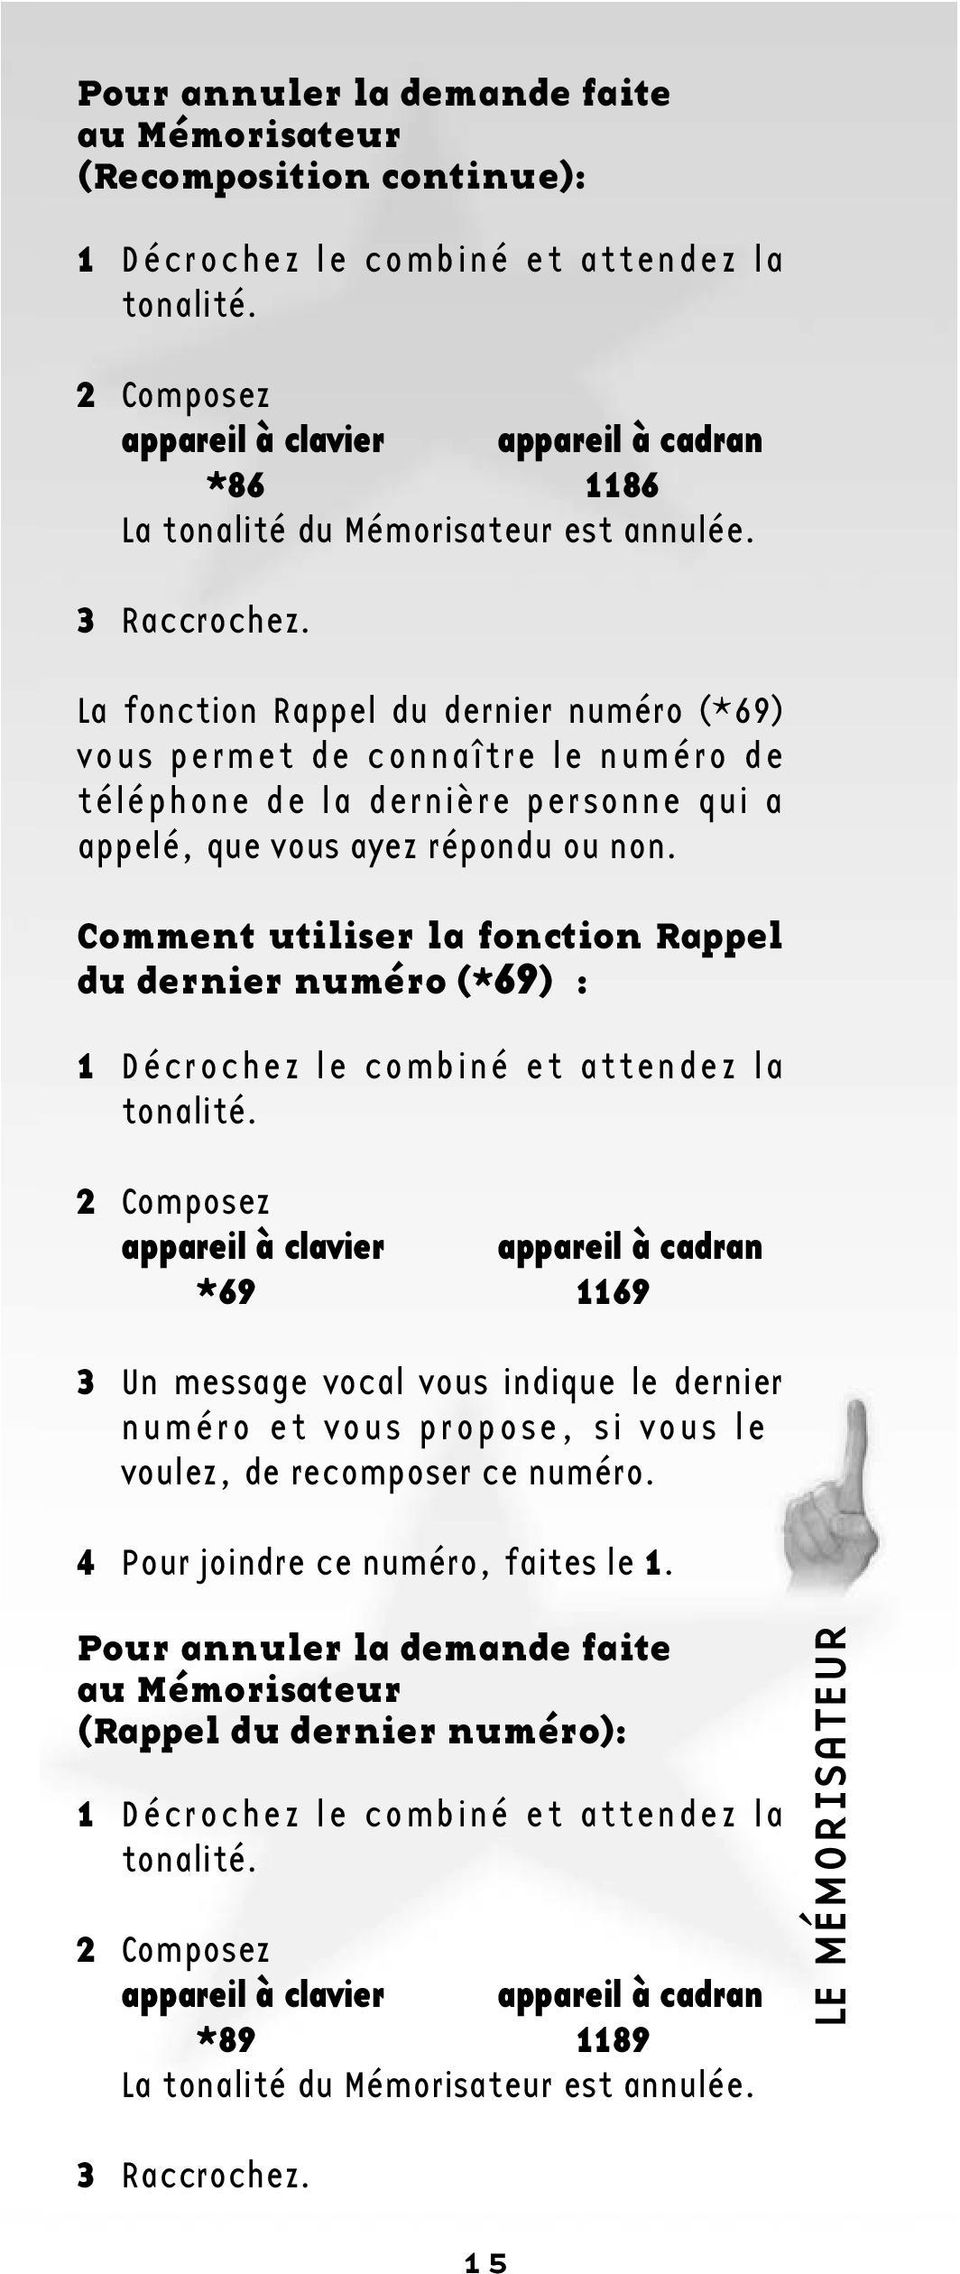 La fonction Rappel du dernier numéro (*69) vous permet de connaître le numéro de téléphone de la dernière personne qui a appelé, que vous ayez répondu ou non.